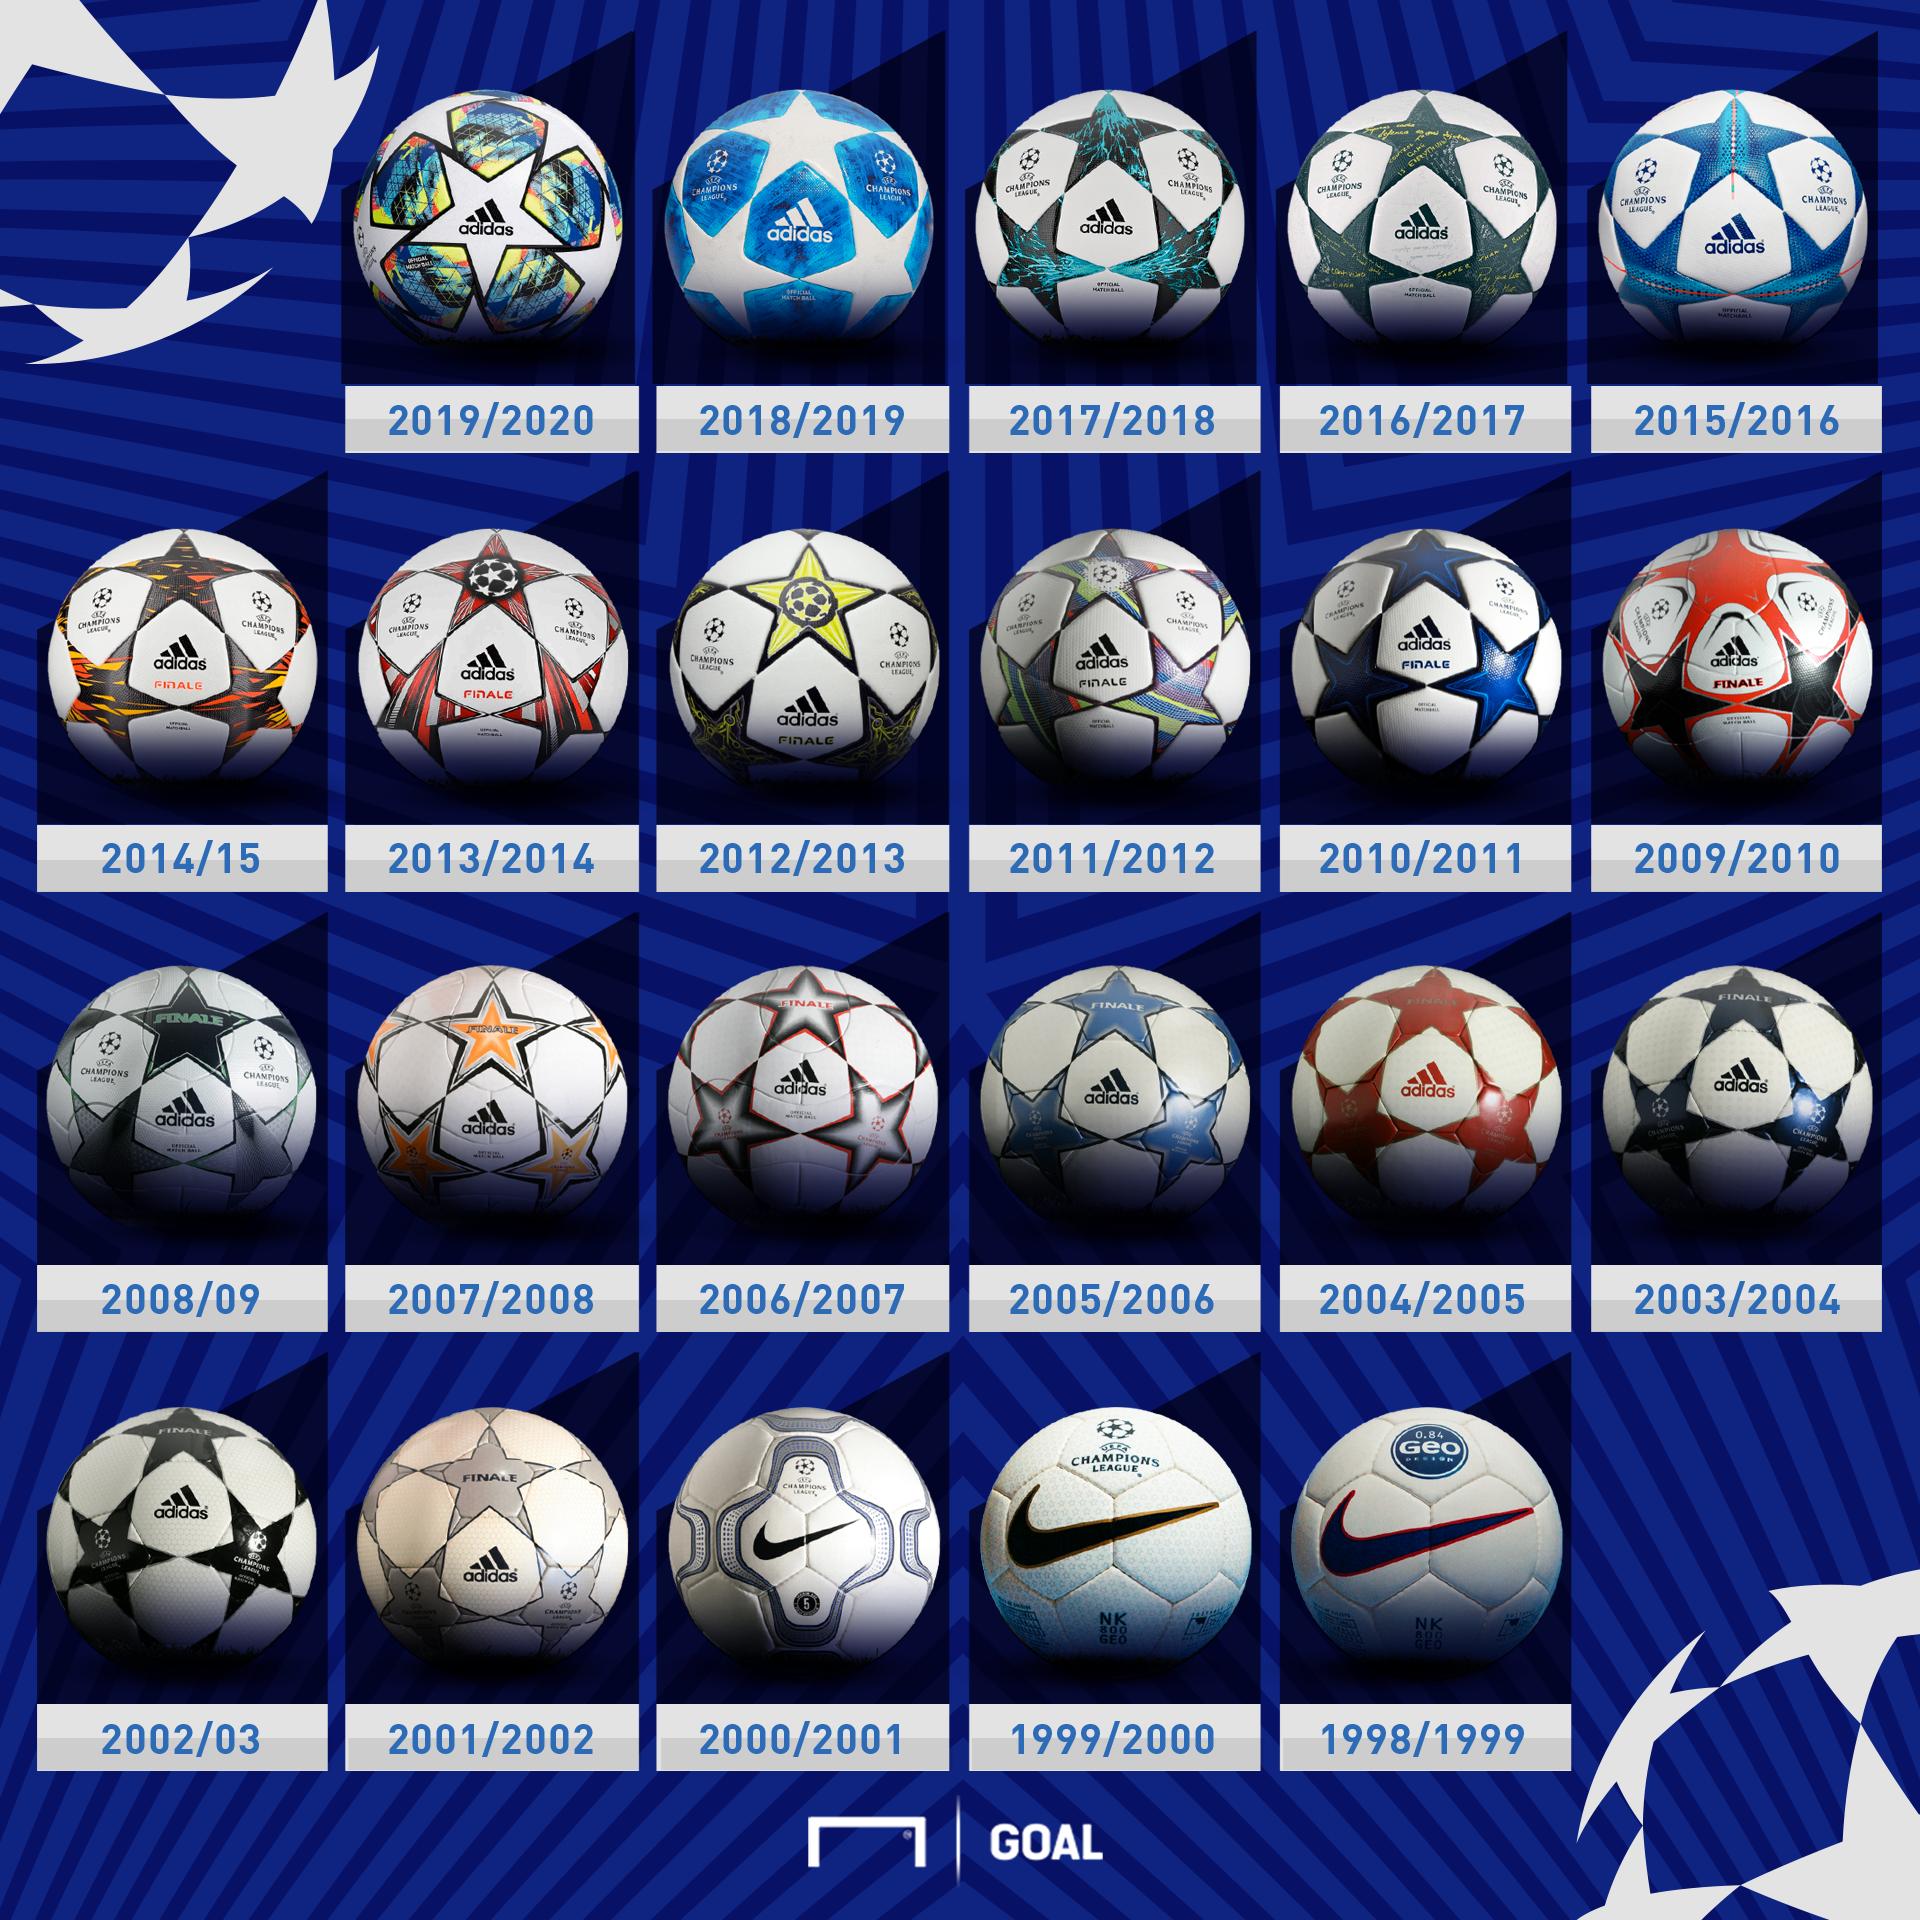 Bolas da Champions League: Conheça os modelos e a sua evolução